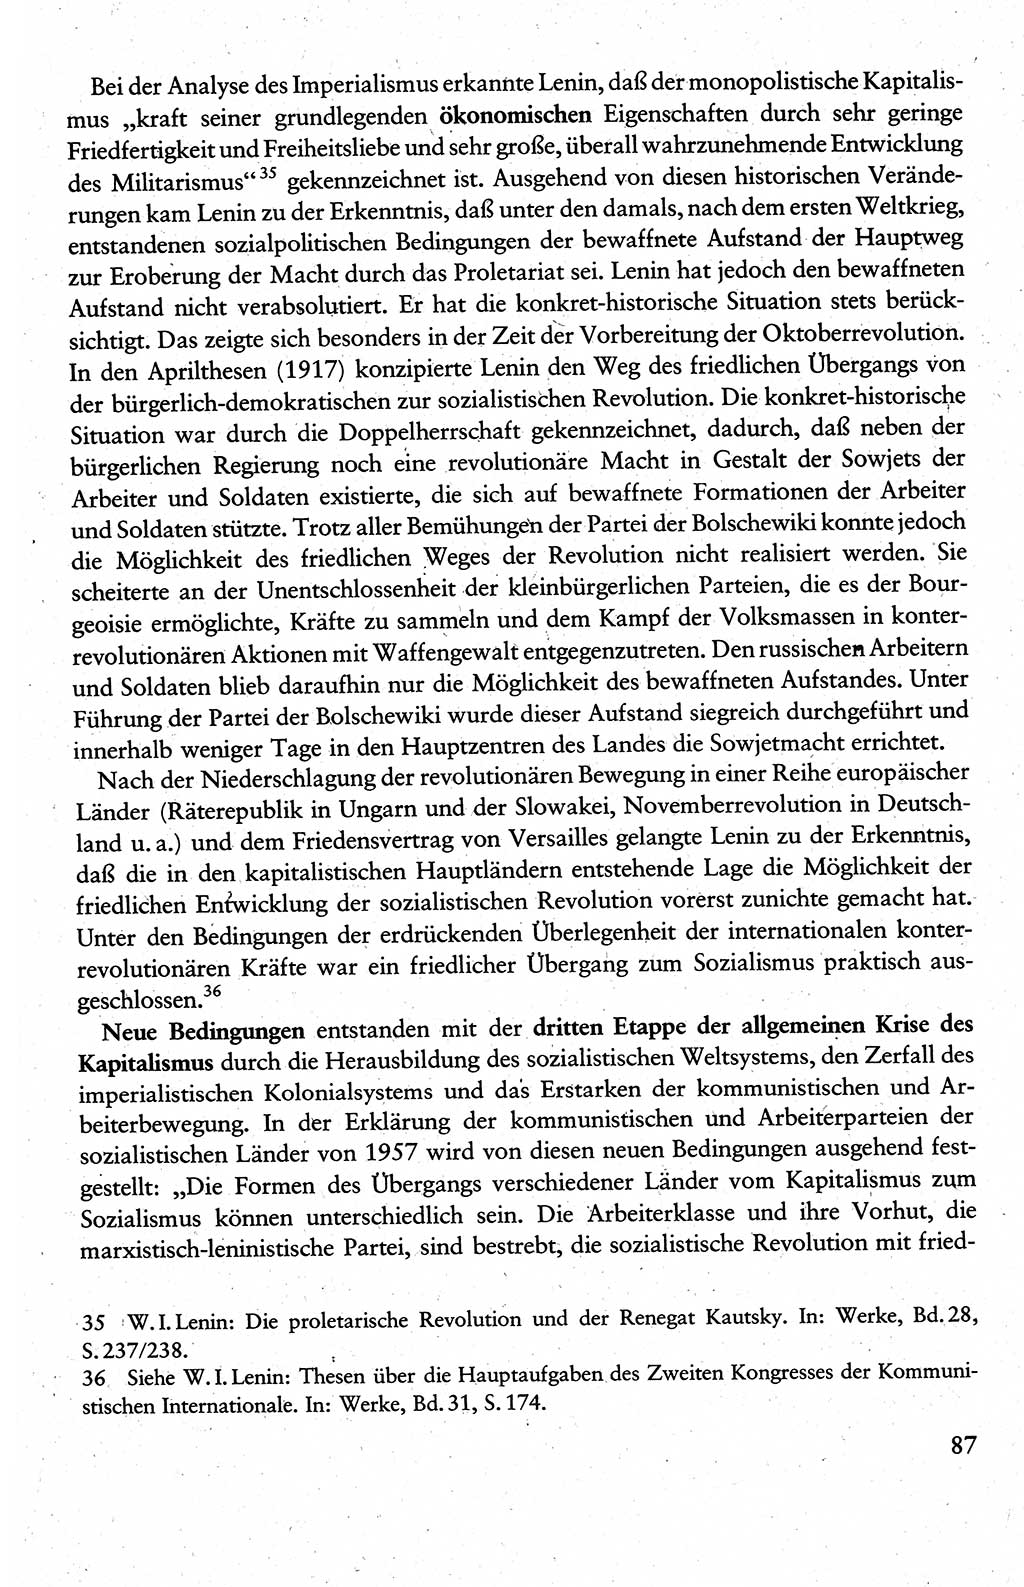 Wissenschaftlicher Kommunismus [Deutsche Demokratische Republik (DDR)], Lehrbuch für das marxistisch-leninistische Grundlagenstudium 1983, Seite 87 (Wiss. Komm. DDR Lb. 1983, S. 87)